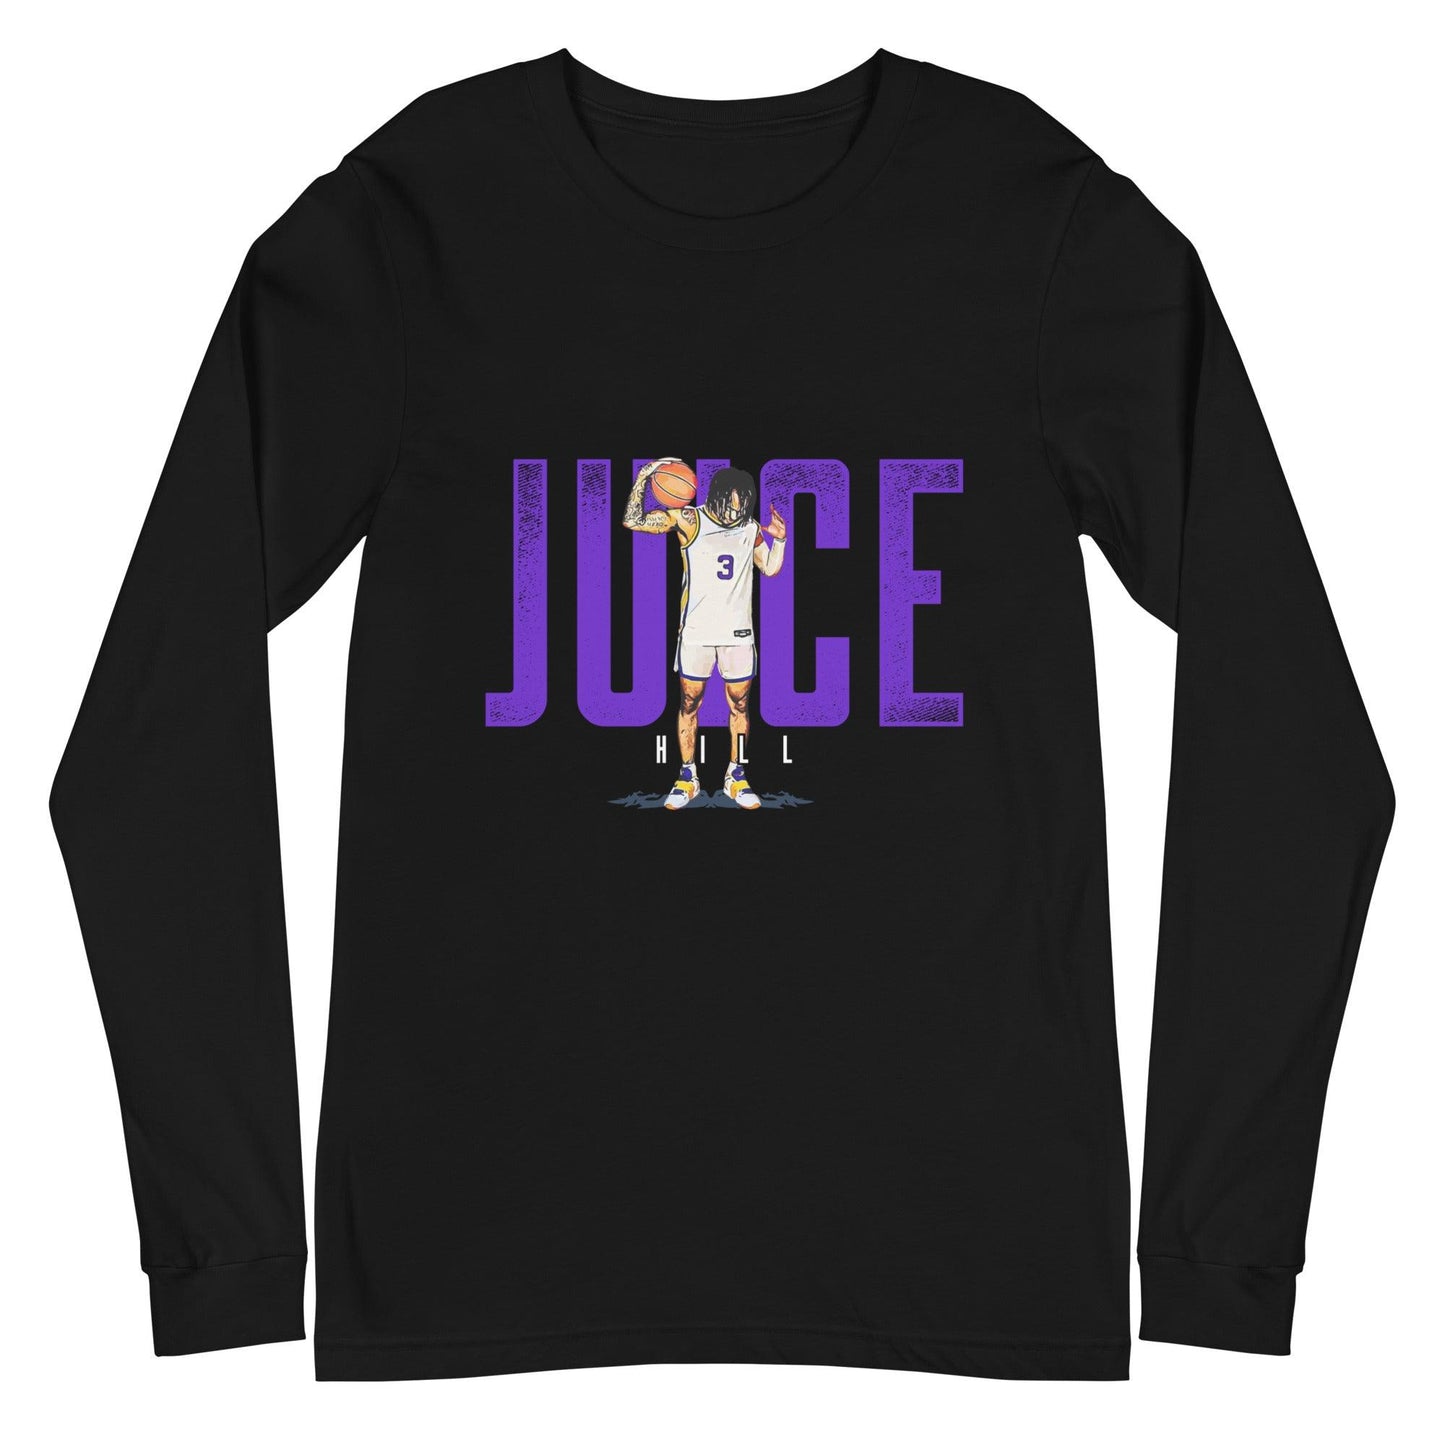 Justice Hill “Juice” Long Sleeve Tee - Fan Arch